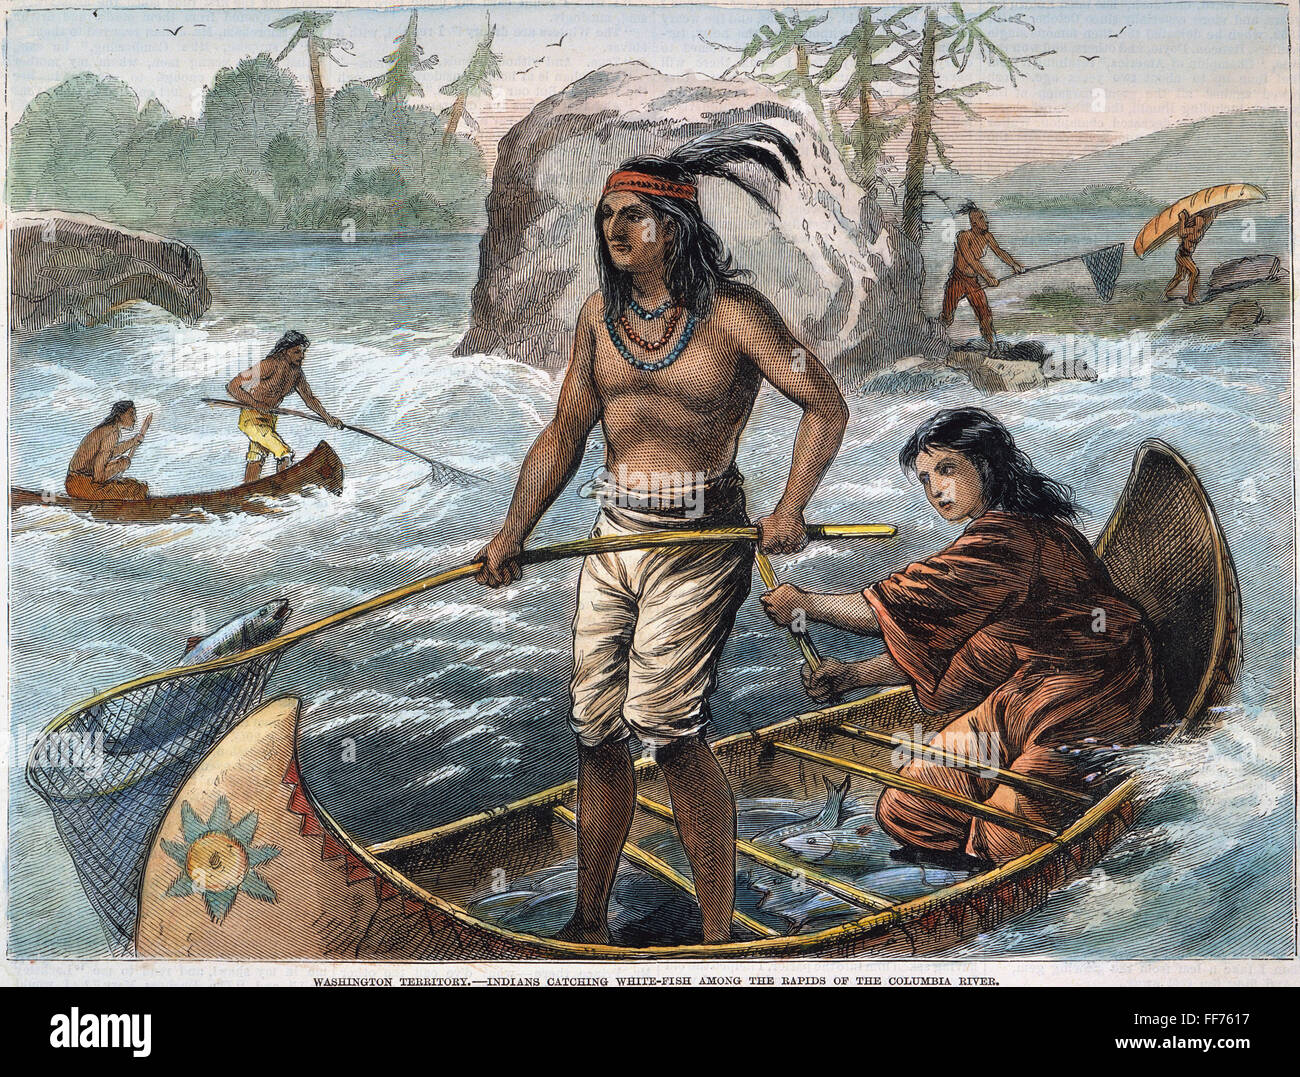 Рыболовством занимаются народы. Древние каноэ полинезийцев. Индейцы вампаноаги. Североамериканские индейцы до Колумба. Лодки индейцев Южной Америки.